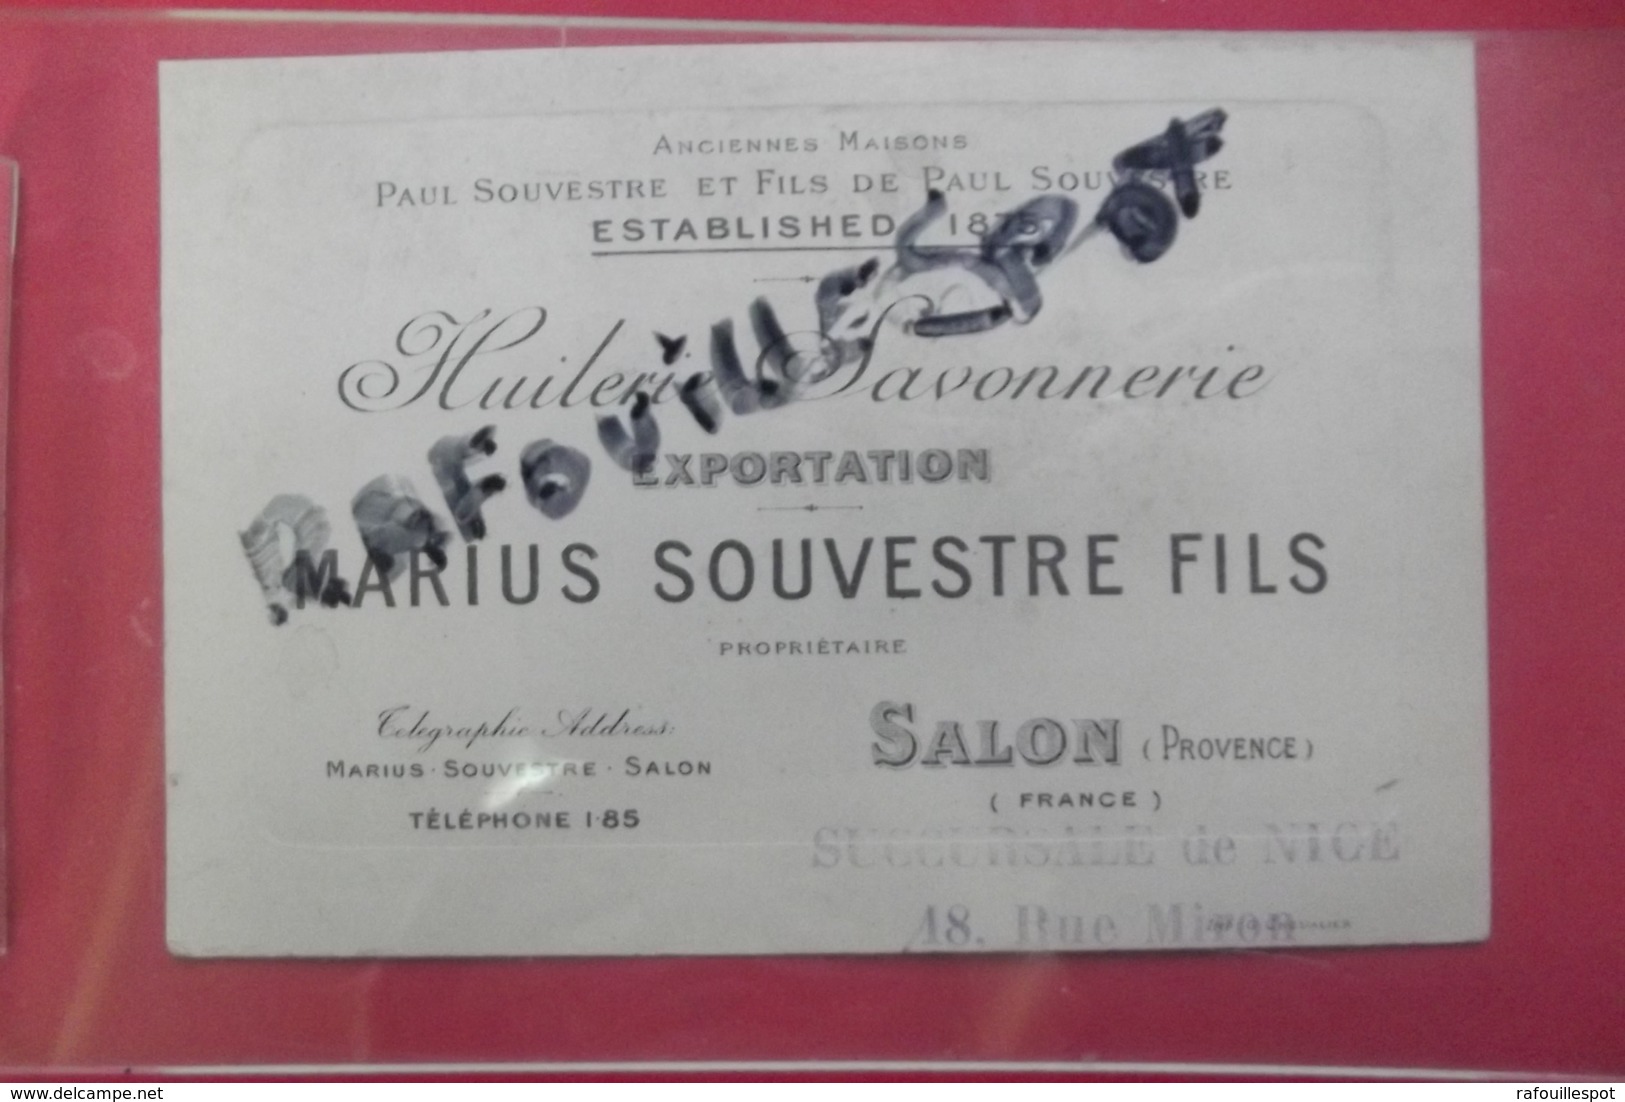 Pub Huileries Savonnerie Exportation Marius Souvestre Salon - Advertising